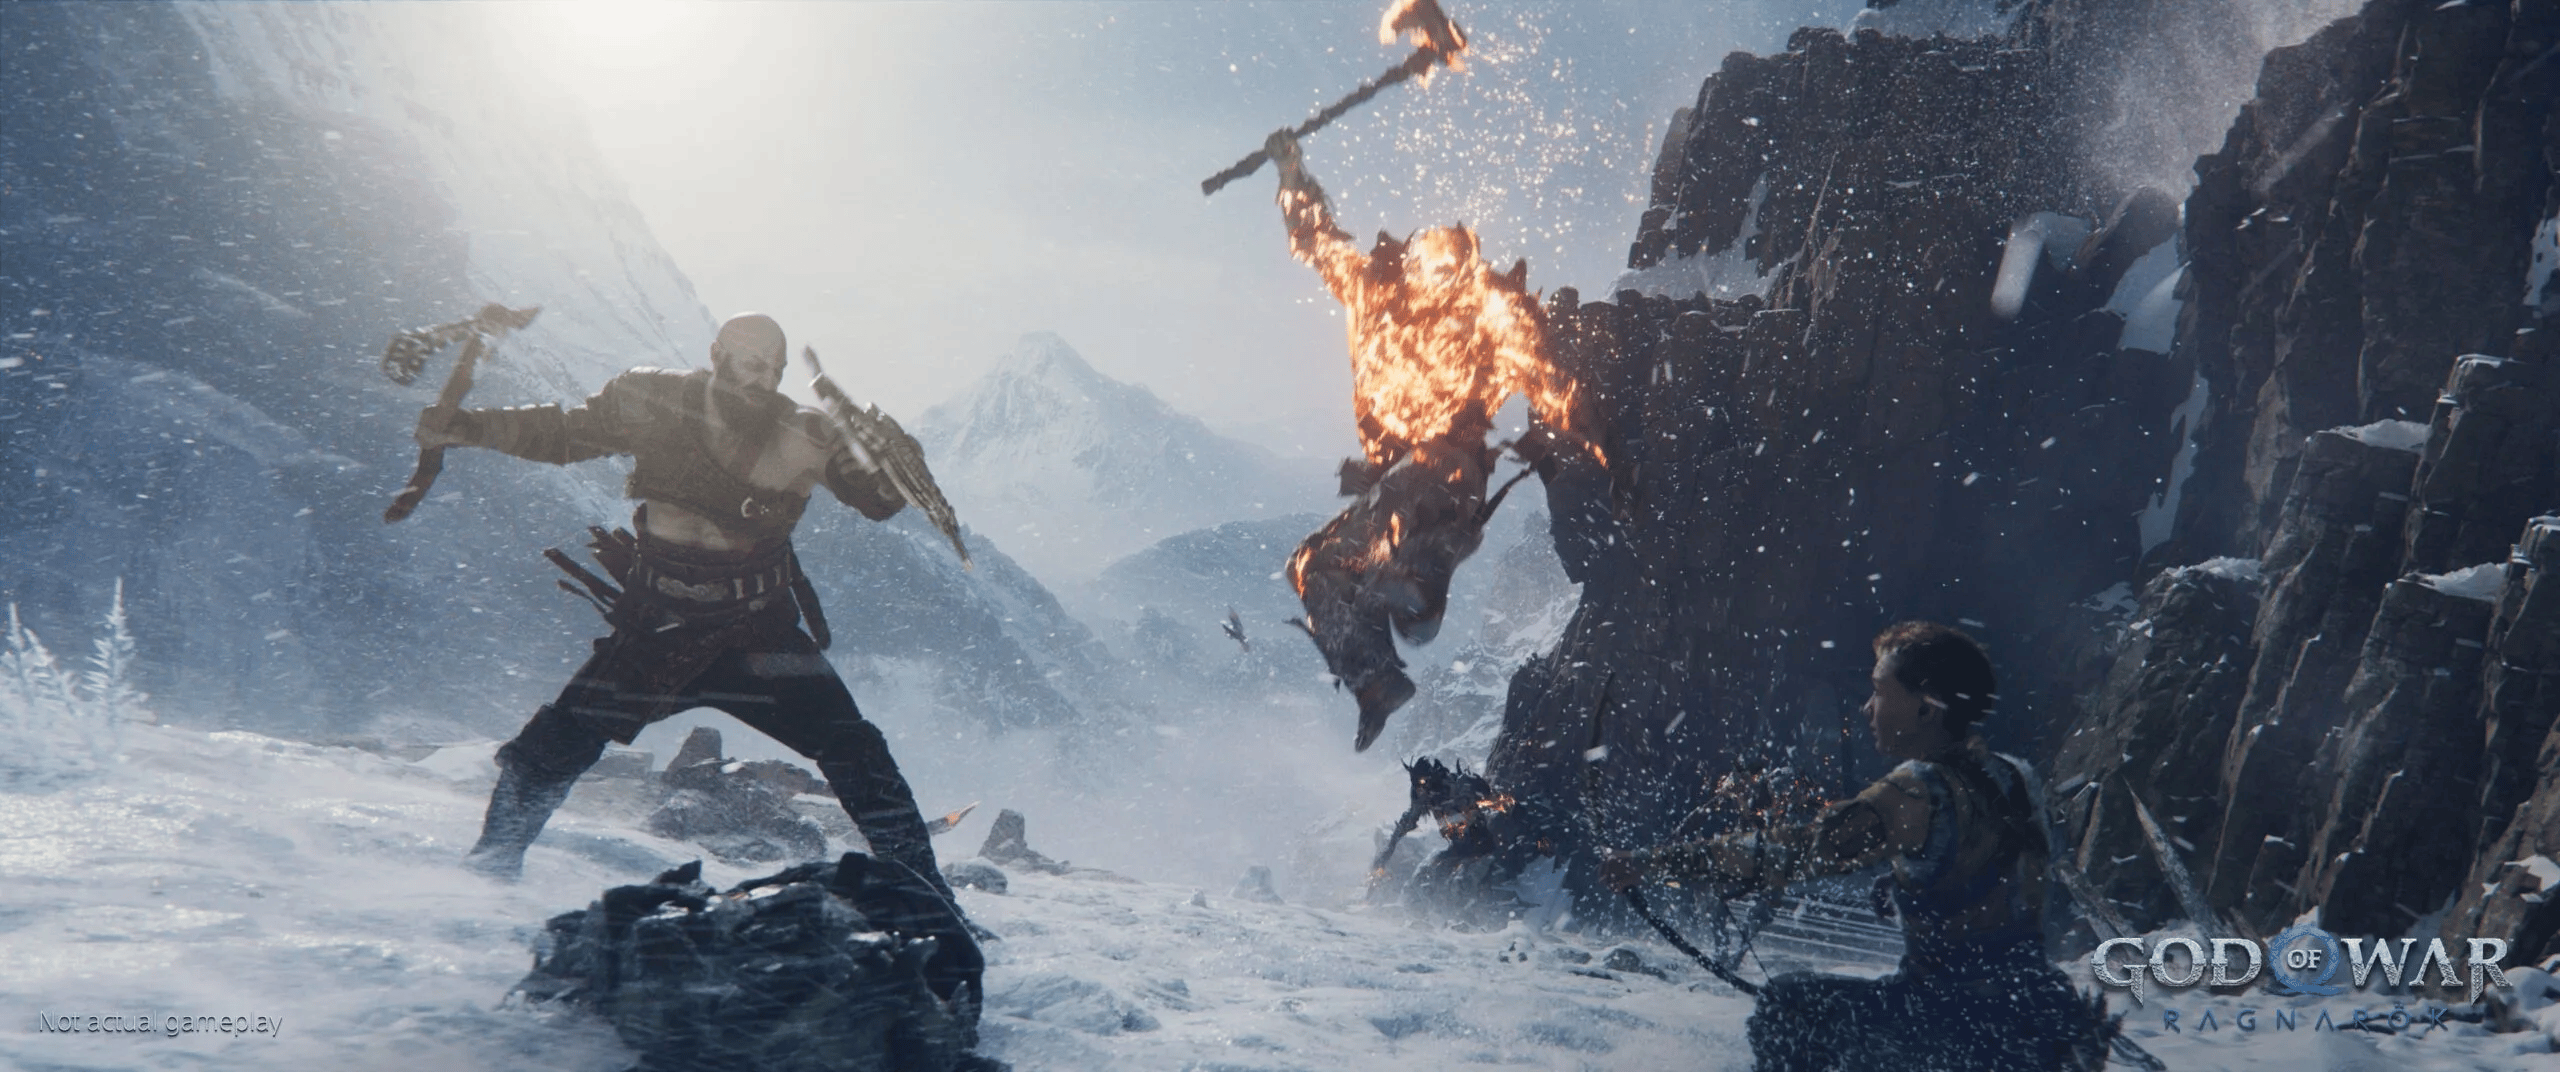 God of War: confira novas imagens com Kratos, Atreus e Angbroda